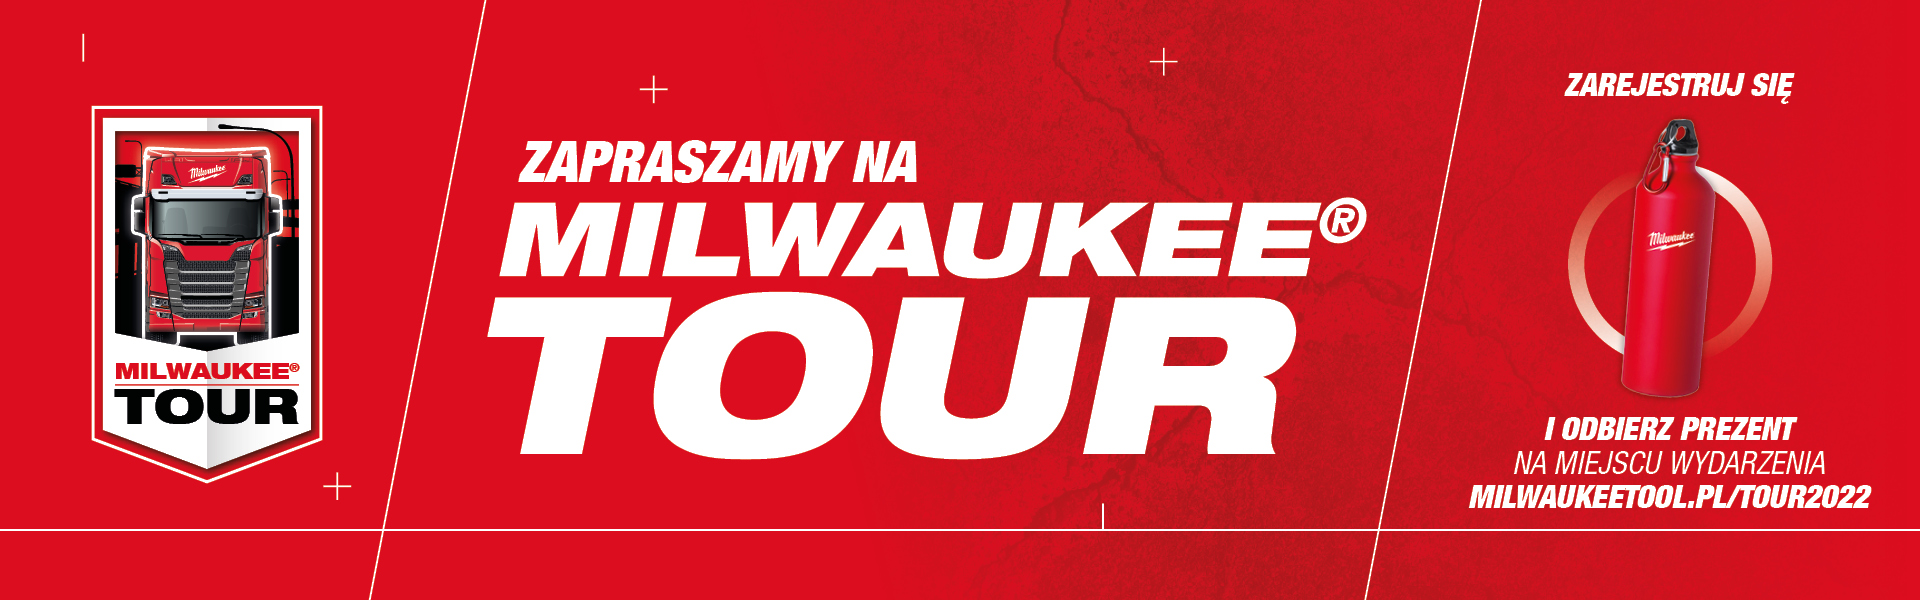 milwaukee tour 2022 polska